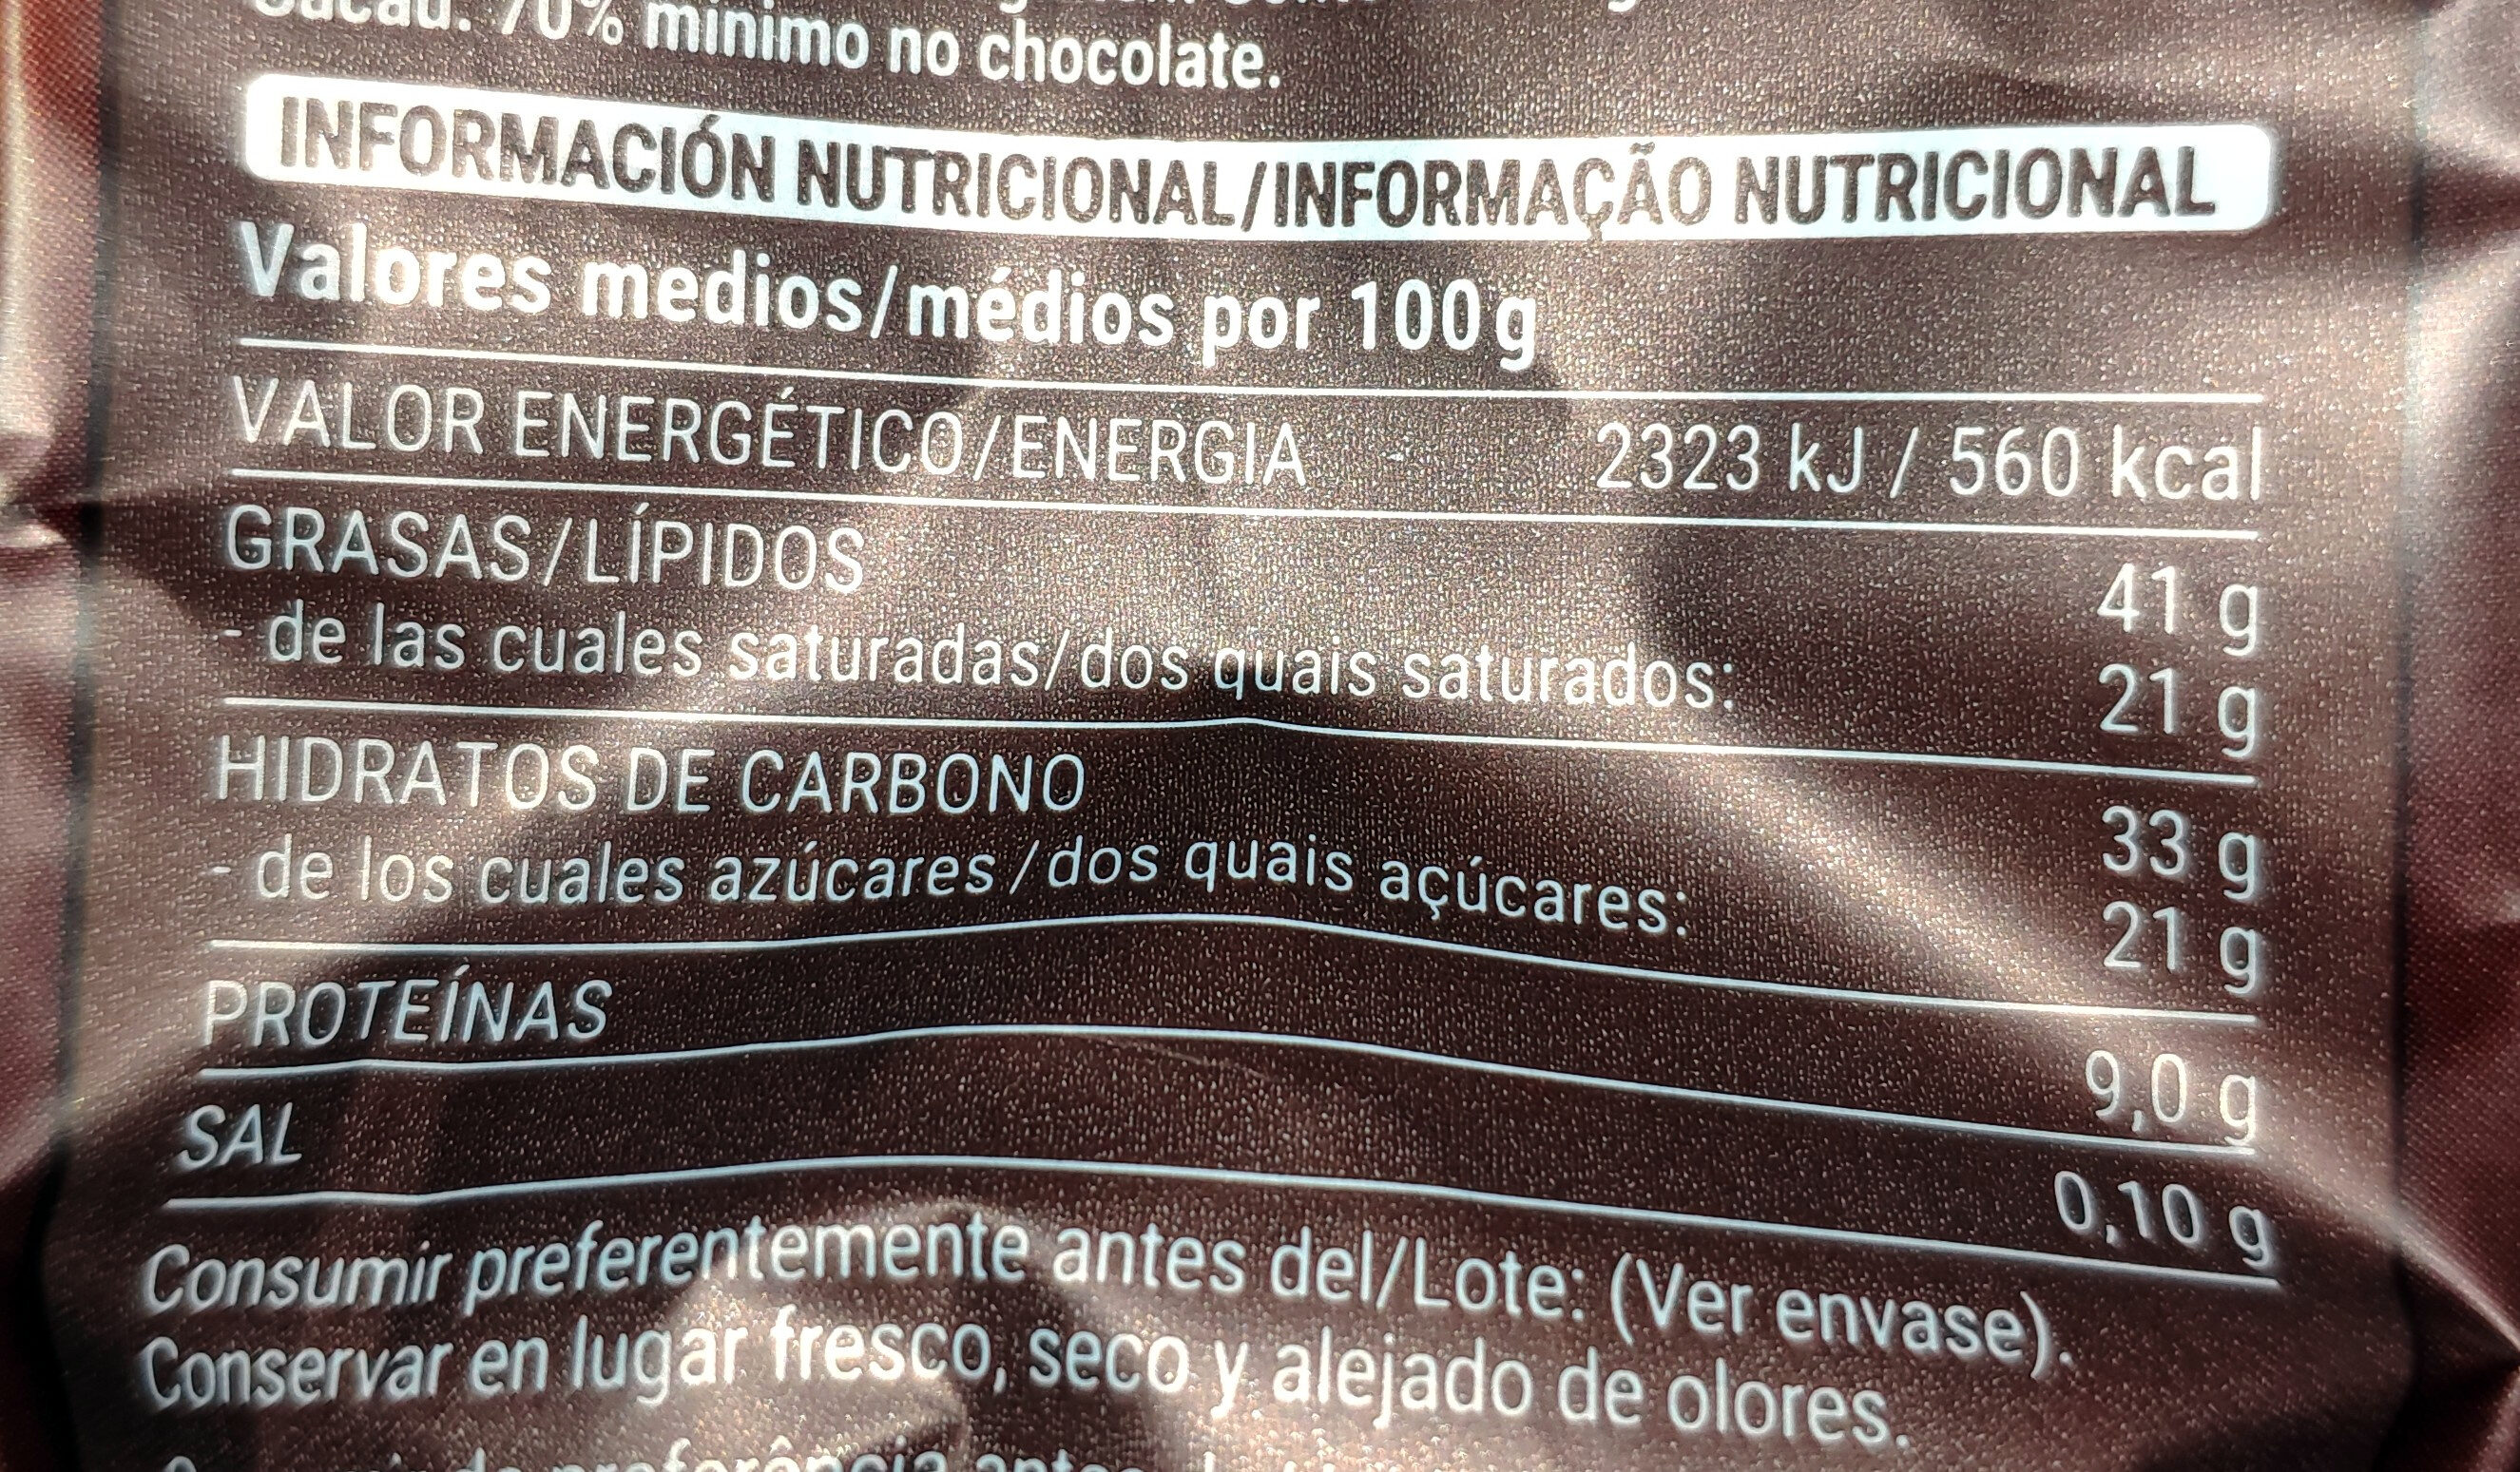 Mini barritas chocolate negro con semillas y galleta - Informació nutricional - es